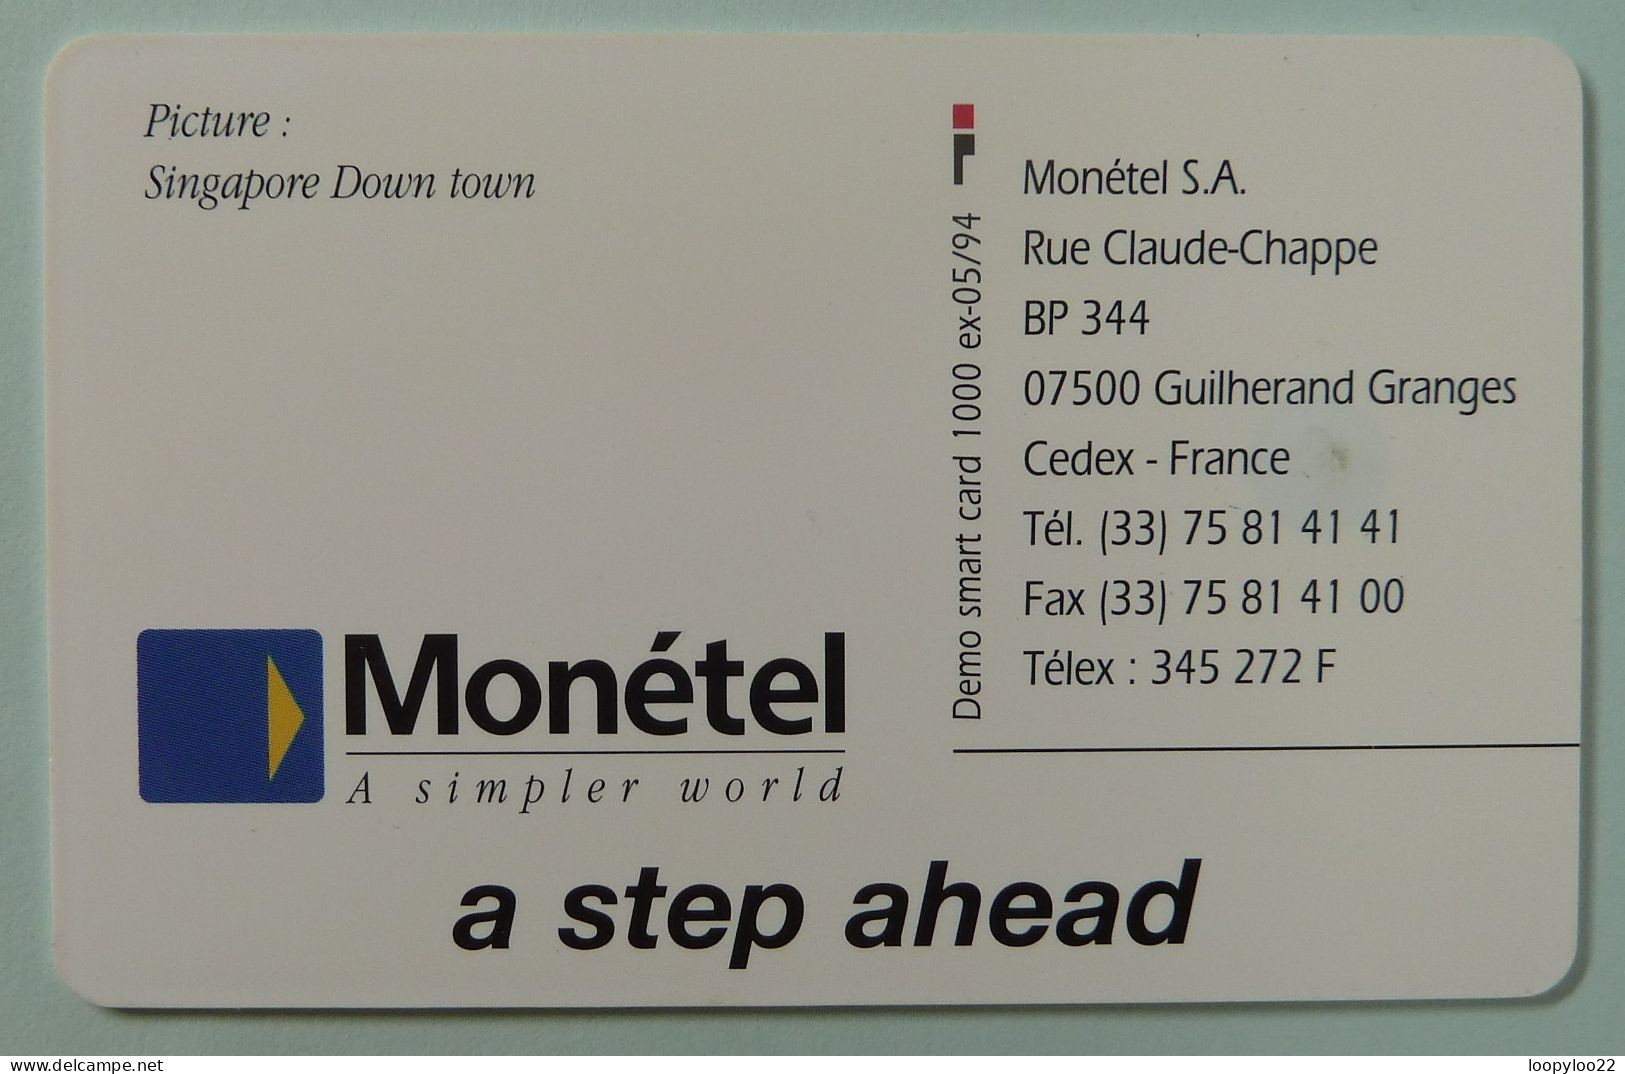 SINGAPORE - Chip - Smartcard - Monetel - Communic Asia '94 - 1000ex - Mint - Singapur